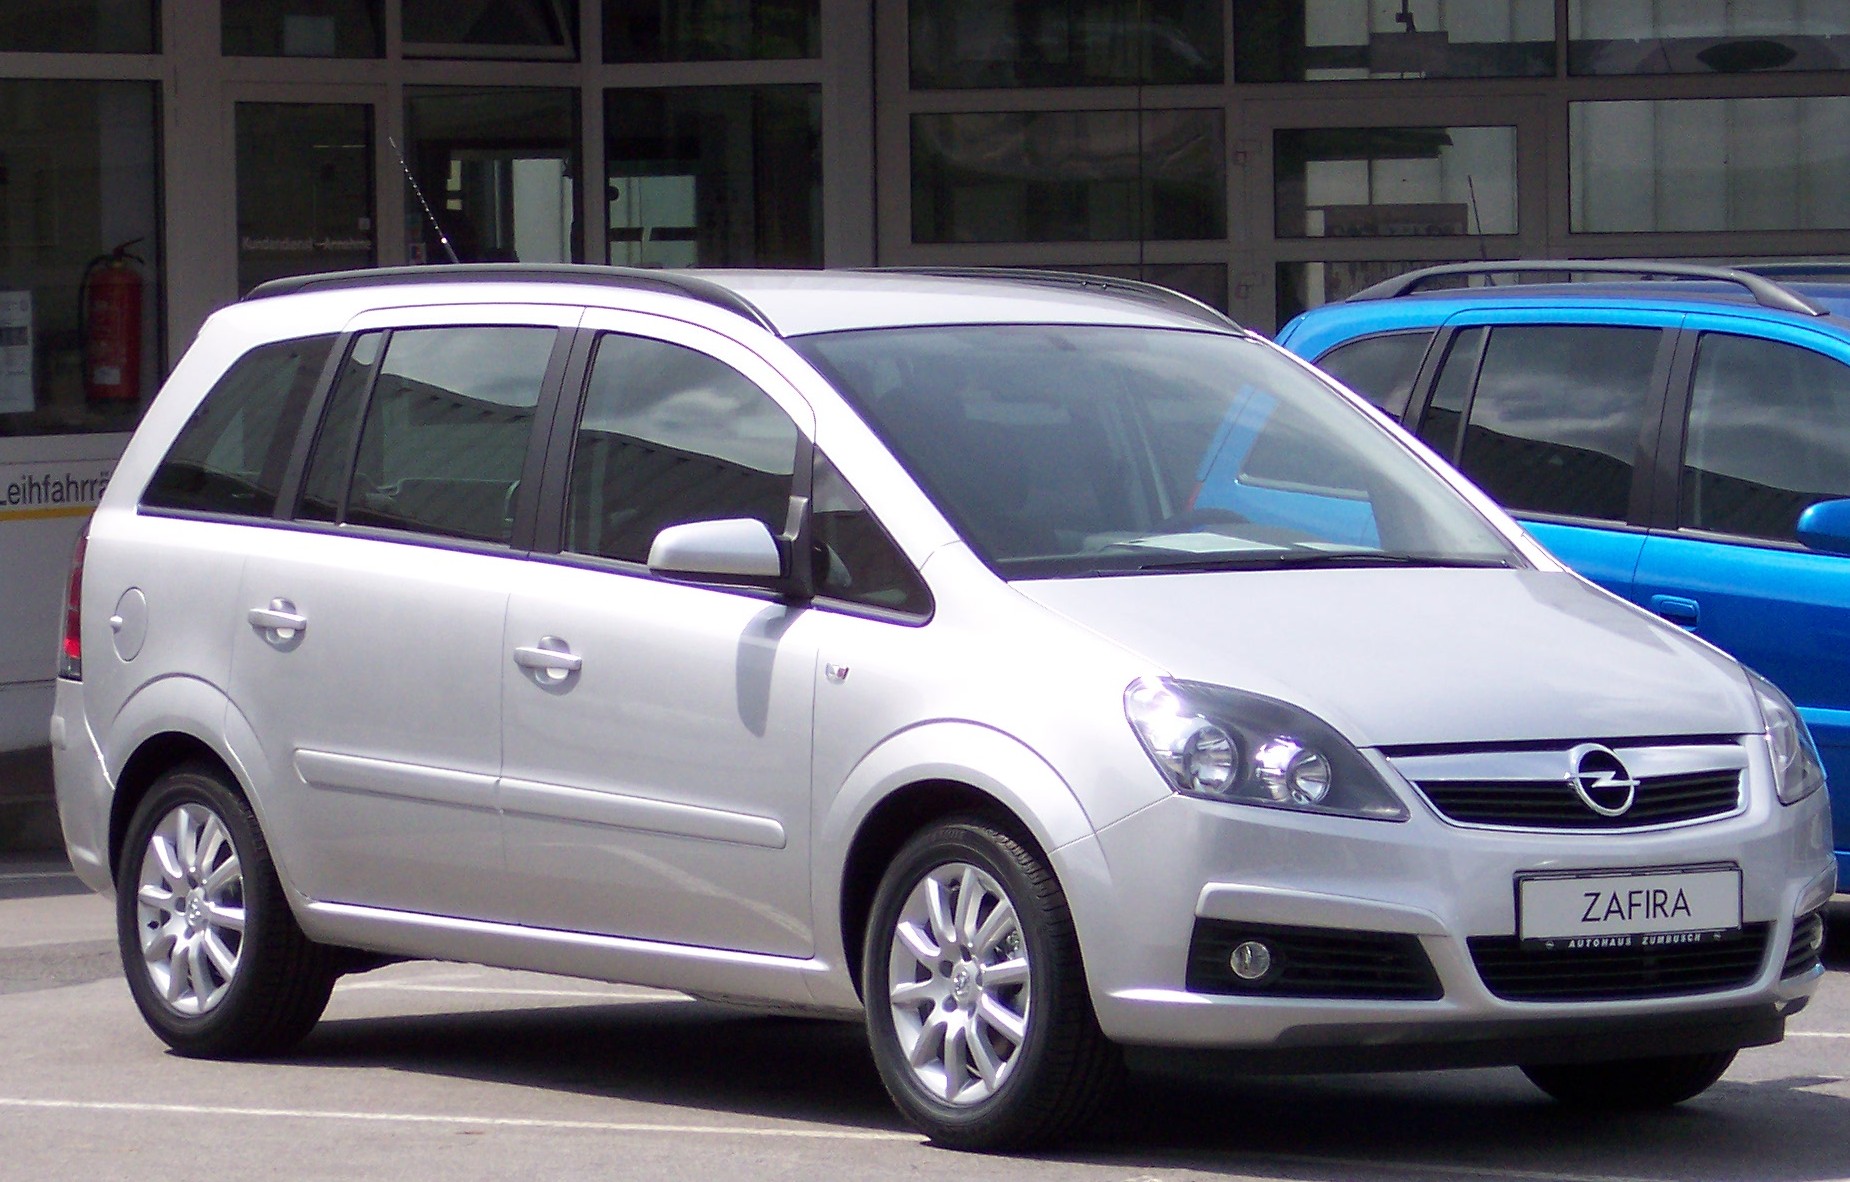 Opel Zafira â€” un modèle fabriqué par Opel. Le modèle a reçu de nombreuses critiques